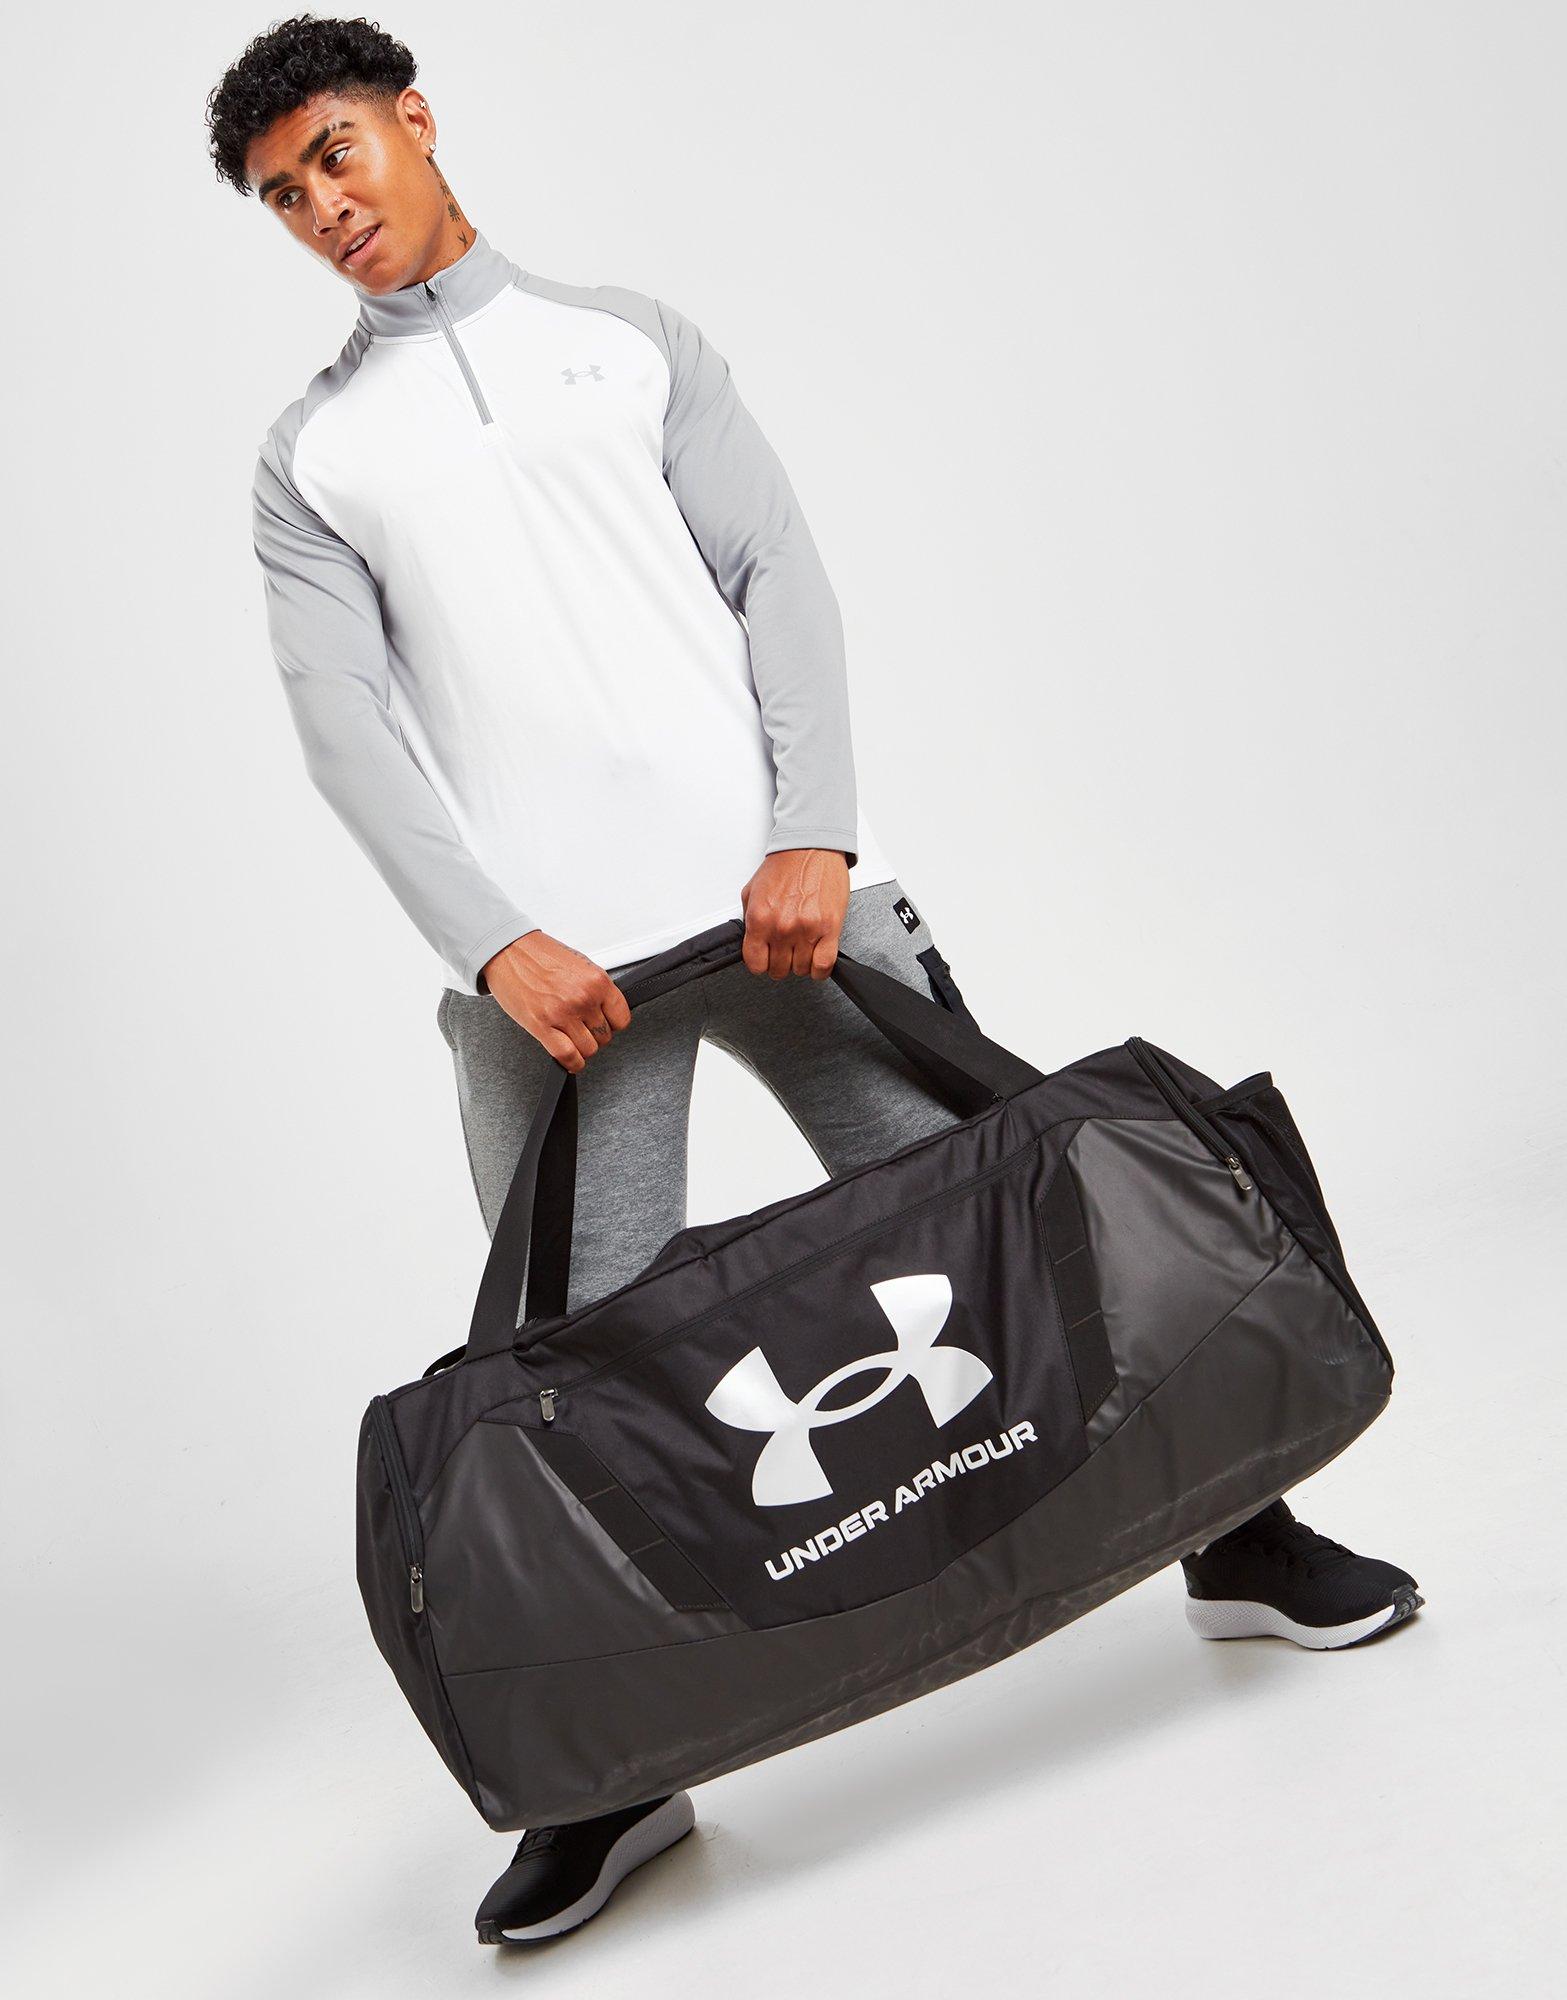 Basics 35 Inch (88.9 cm) Duffel Trolley Bag - Black : :  Fashion